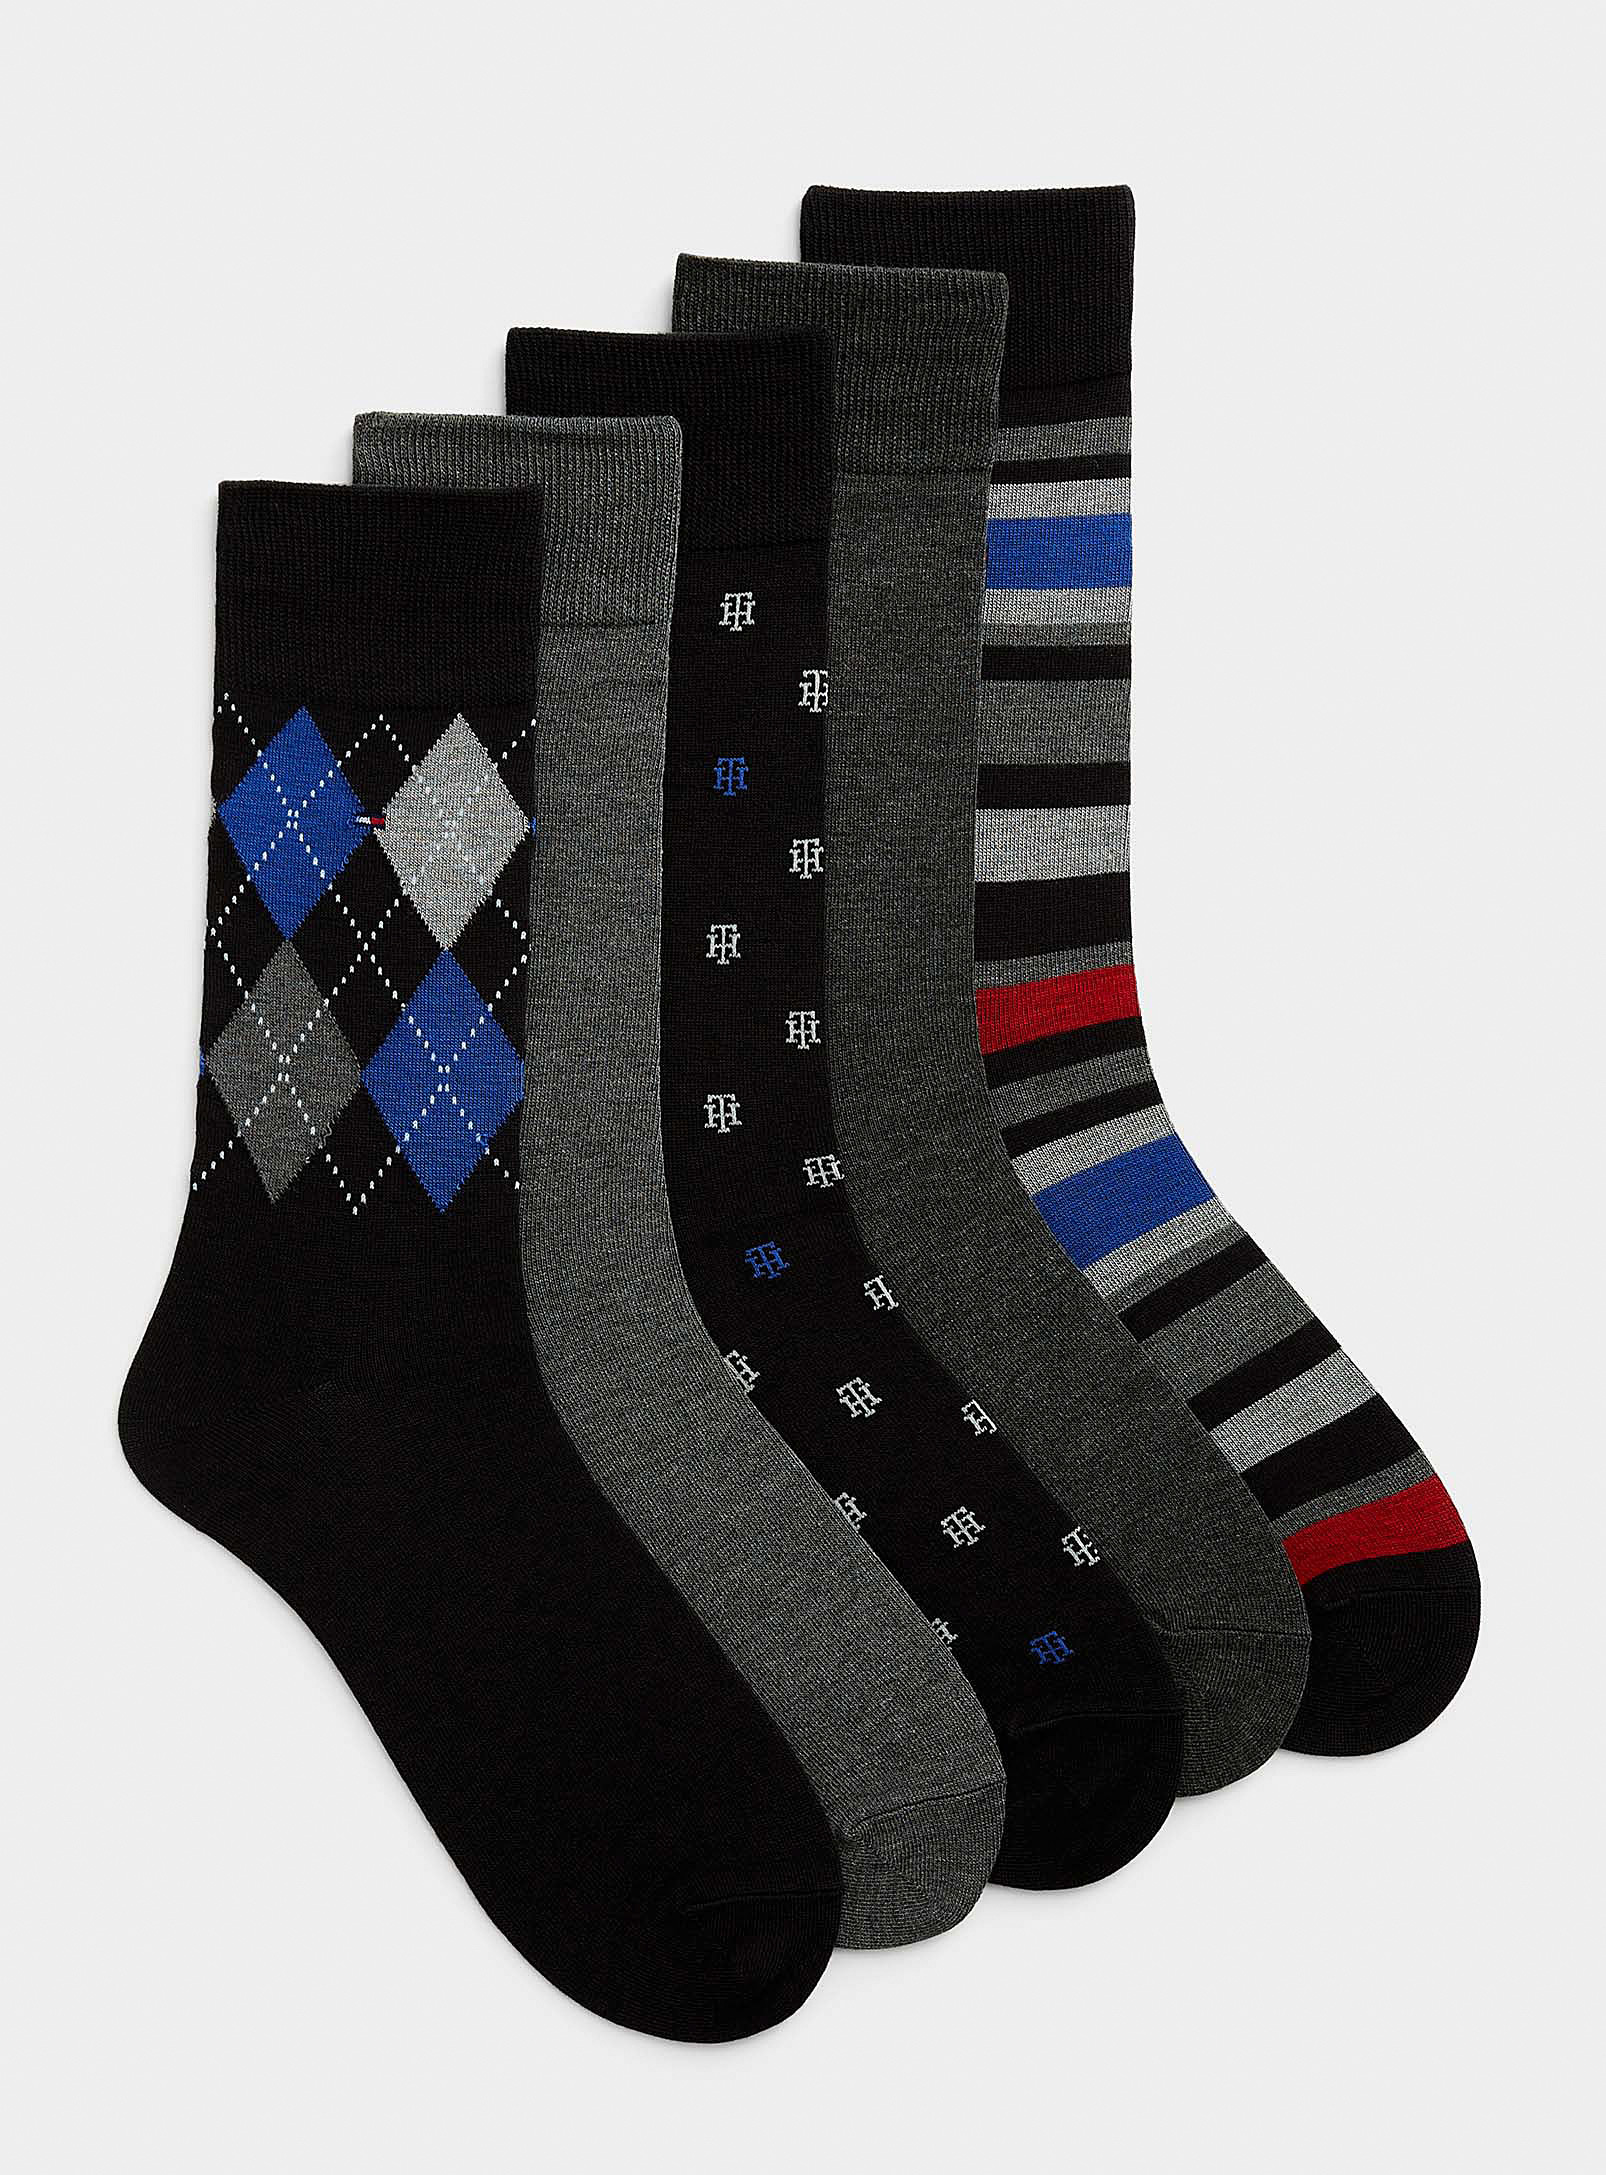 Tommy Hilfiger - Men's Solid and patterned dress socks 5-pack